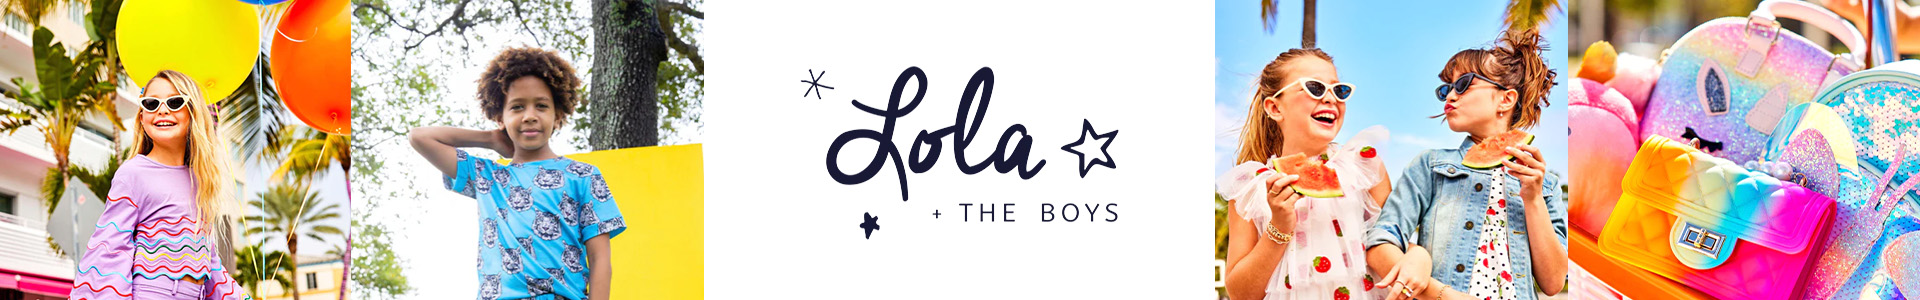 lola+boys-1920x300